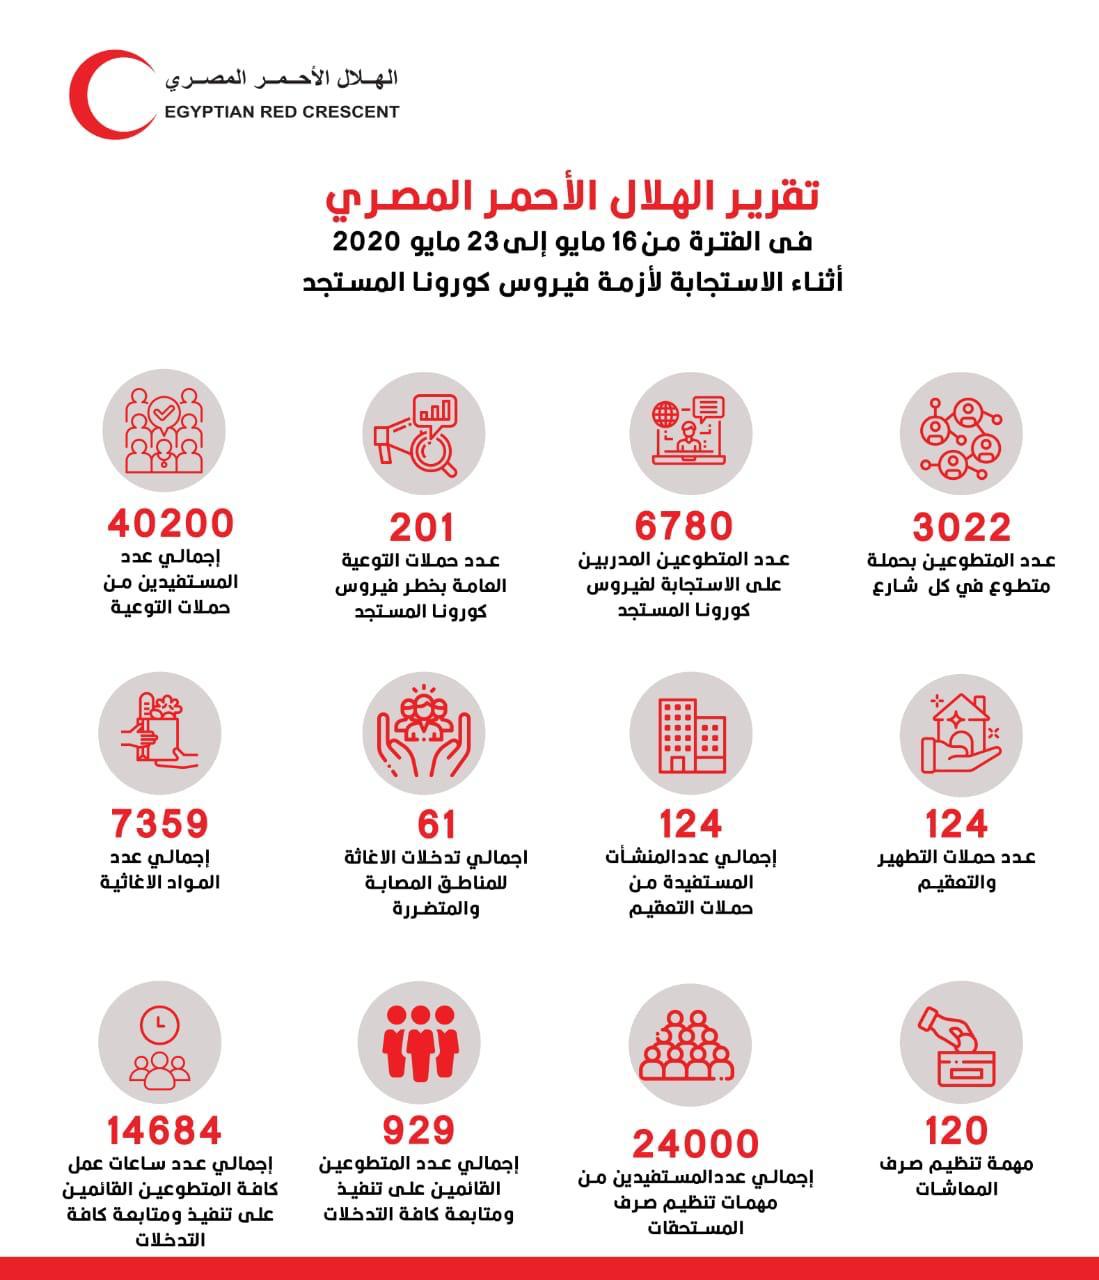   الهلال الأحمر المصري يقدم خدمات للجمهور ويوزيع المساعدات لمواجهة فيروس كورونا